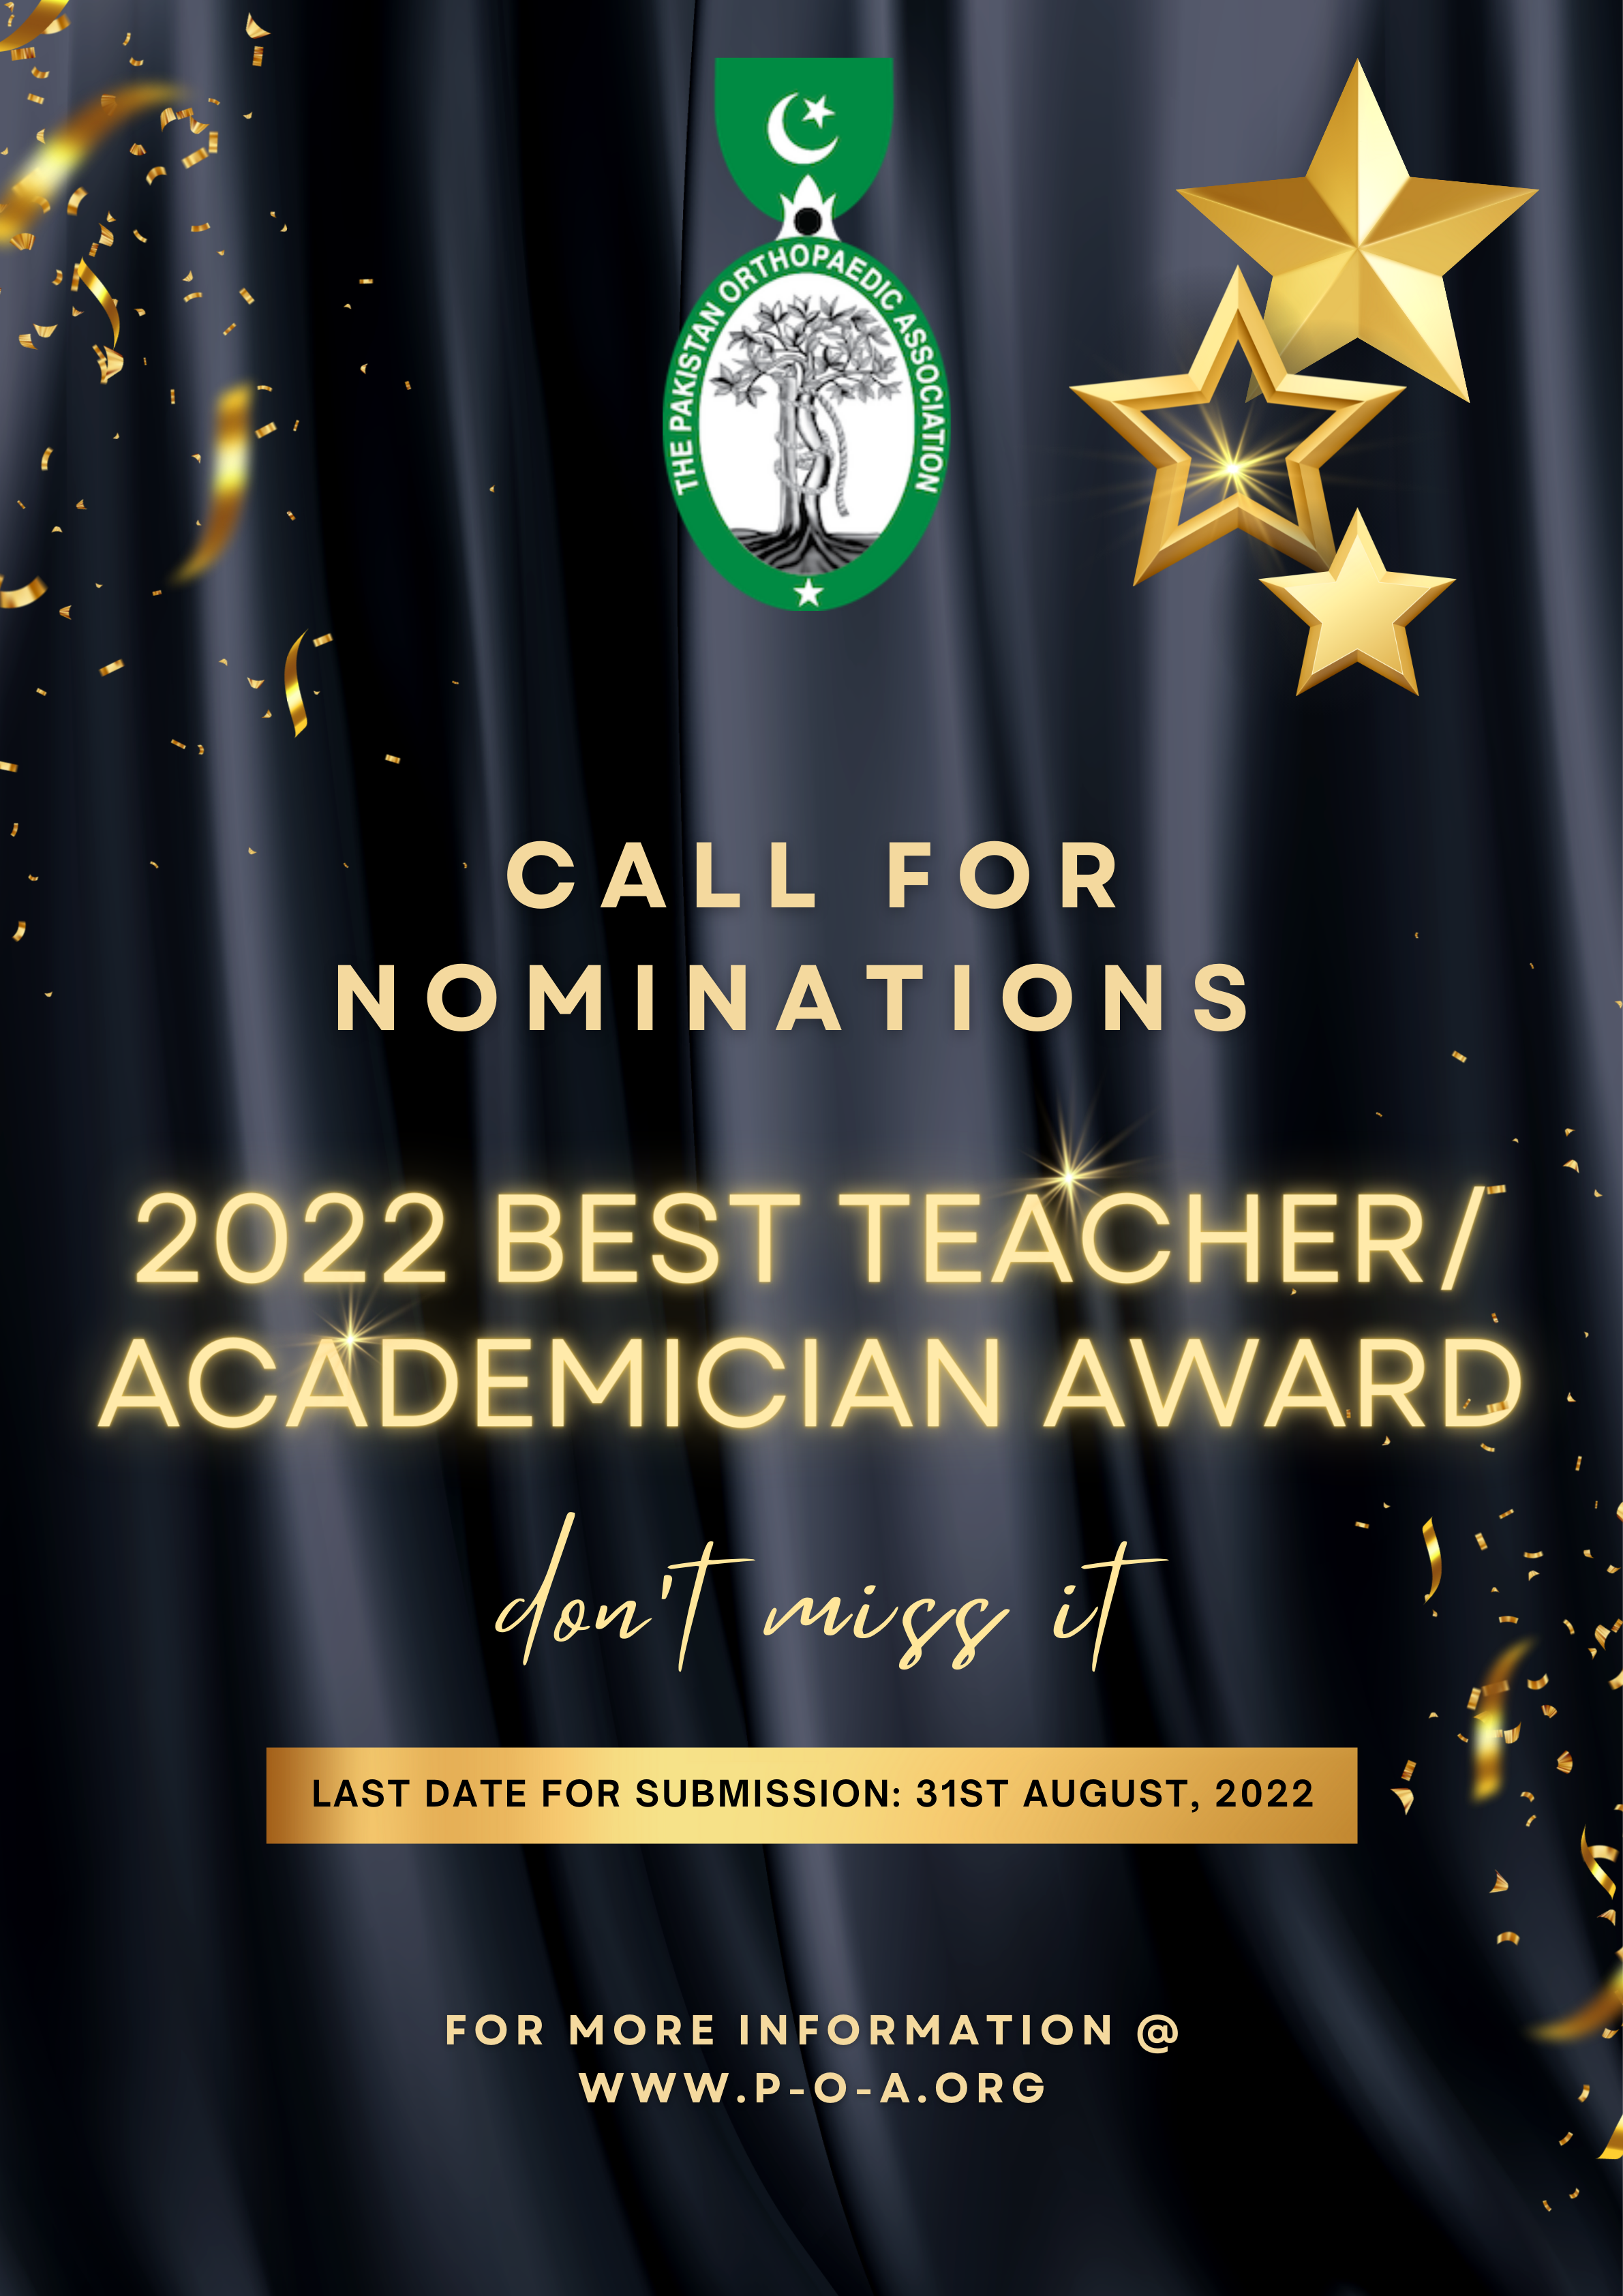 2022 BEST TEACHER/ ACADEMICIAN AWARD